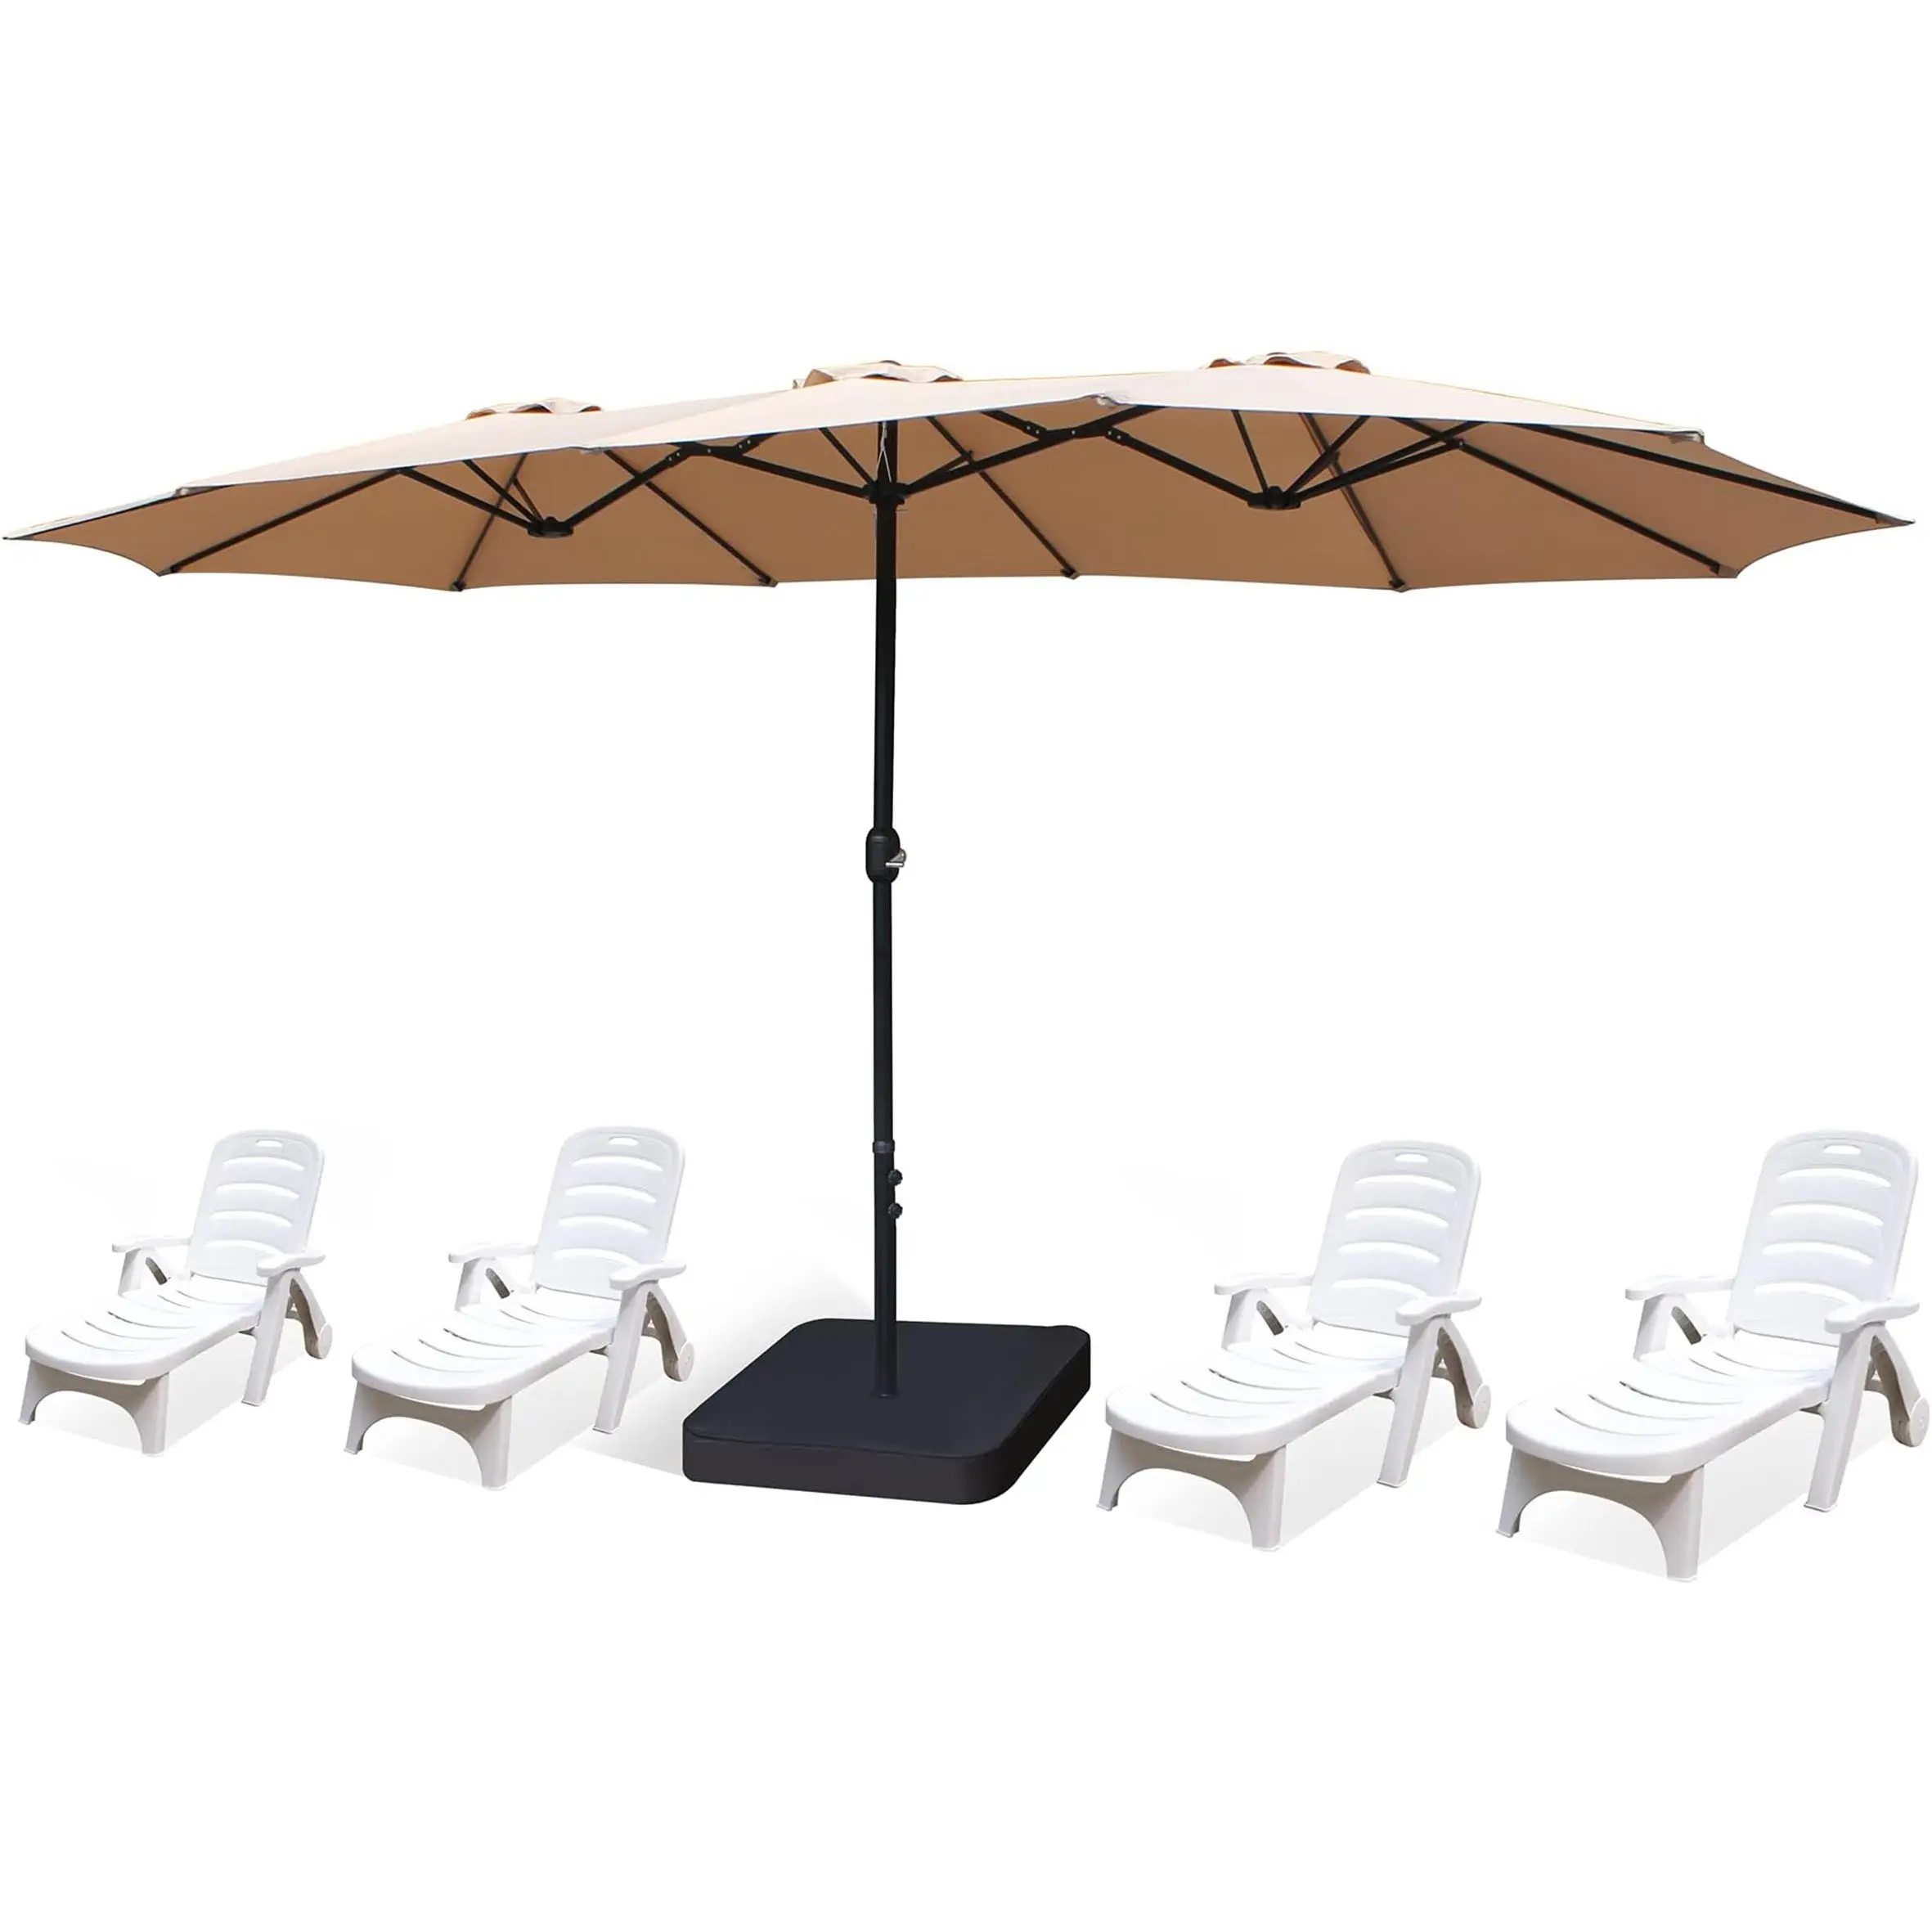 Restoran alüminyum plaj bahçe şemsiyesi açık şemsiye bahçe açık şemsiye plaj şemsiyeleri